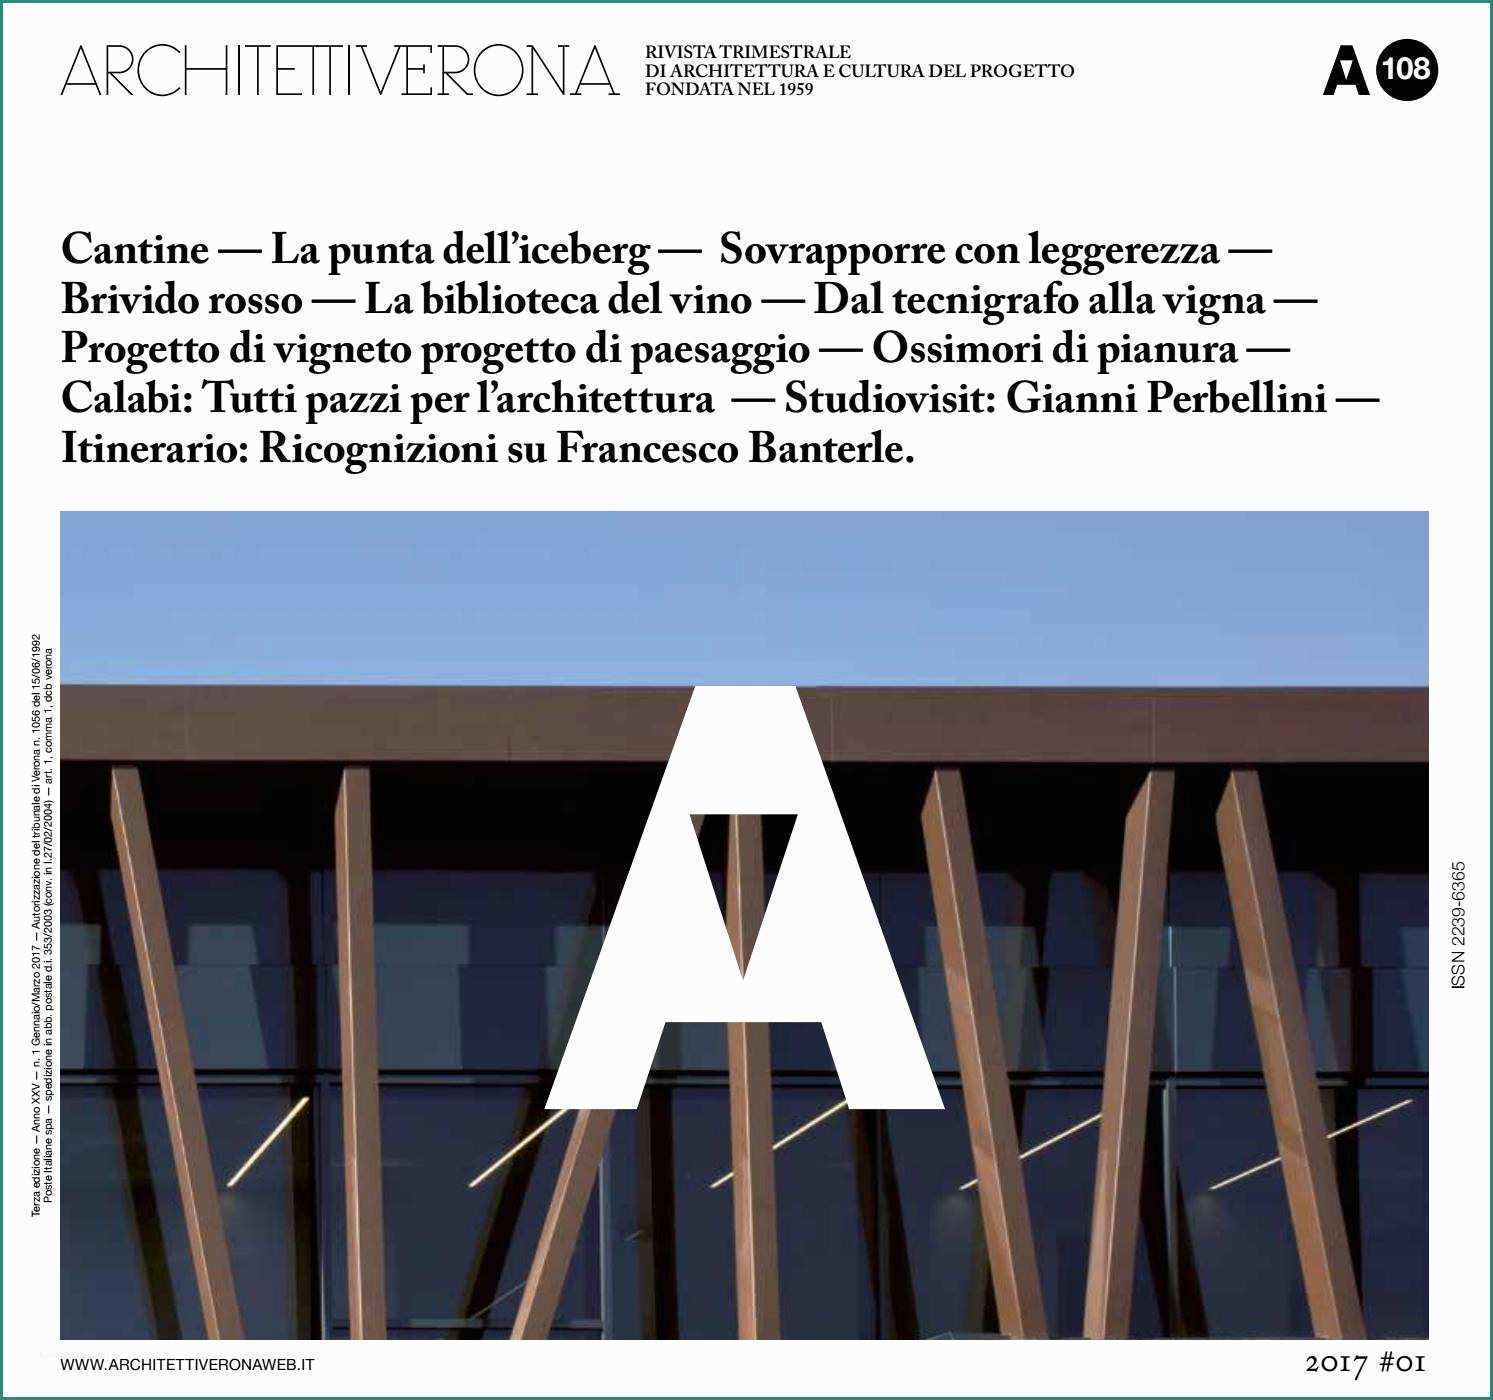 Saliscale Elettrico Usato E Architettiverona 108 by Architettiverona issuu